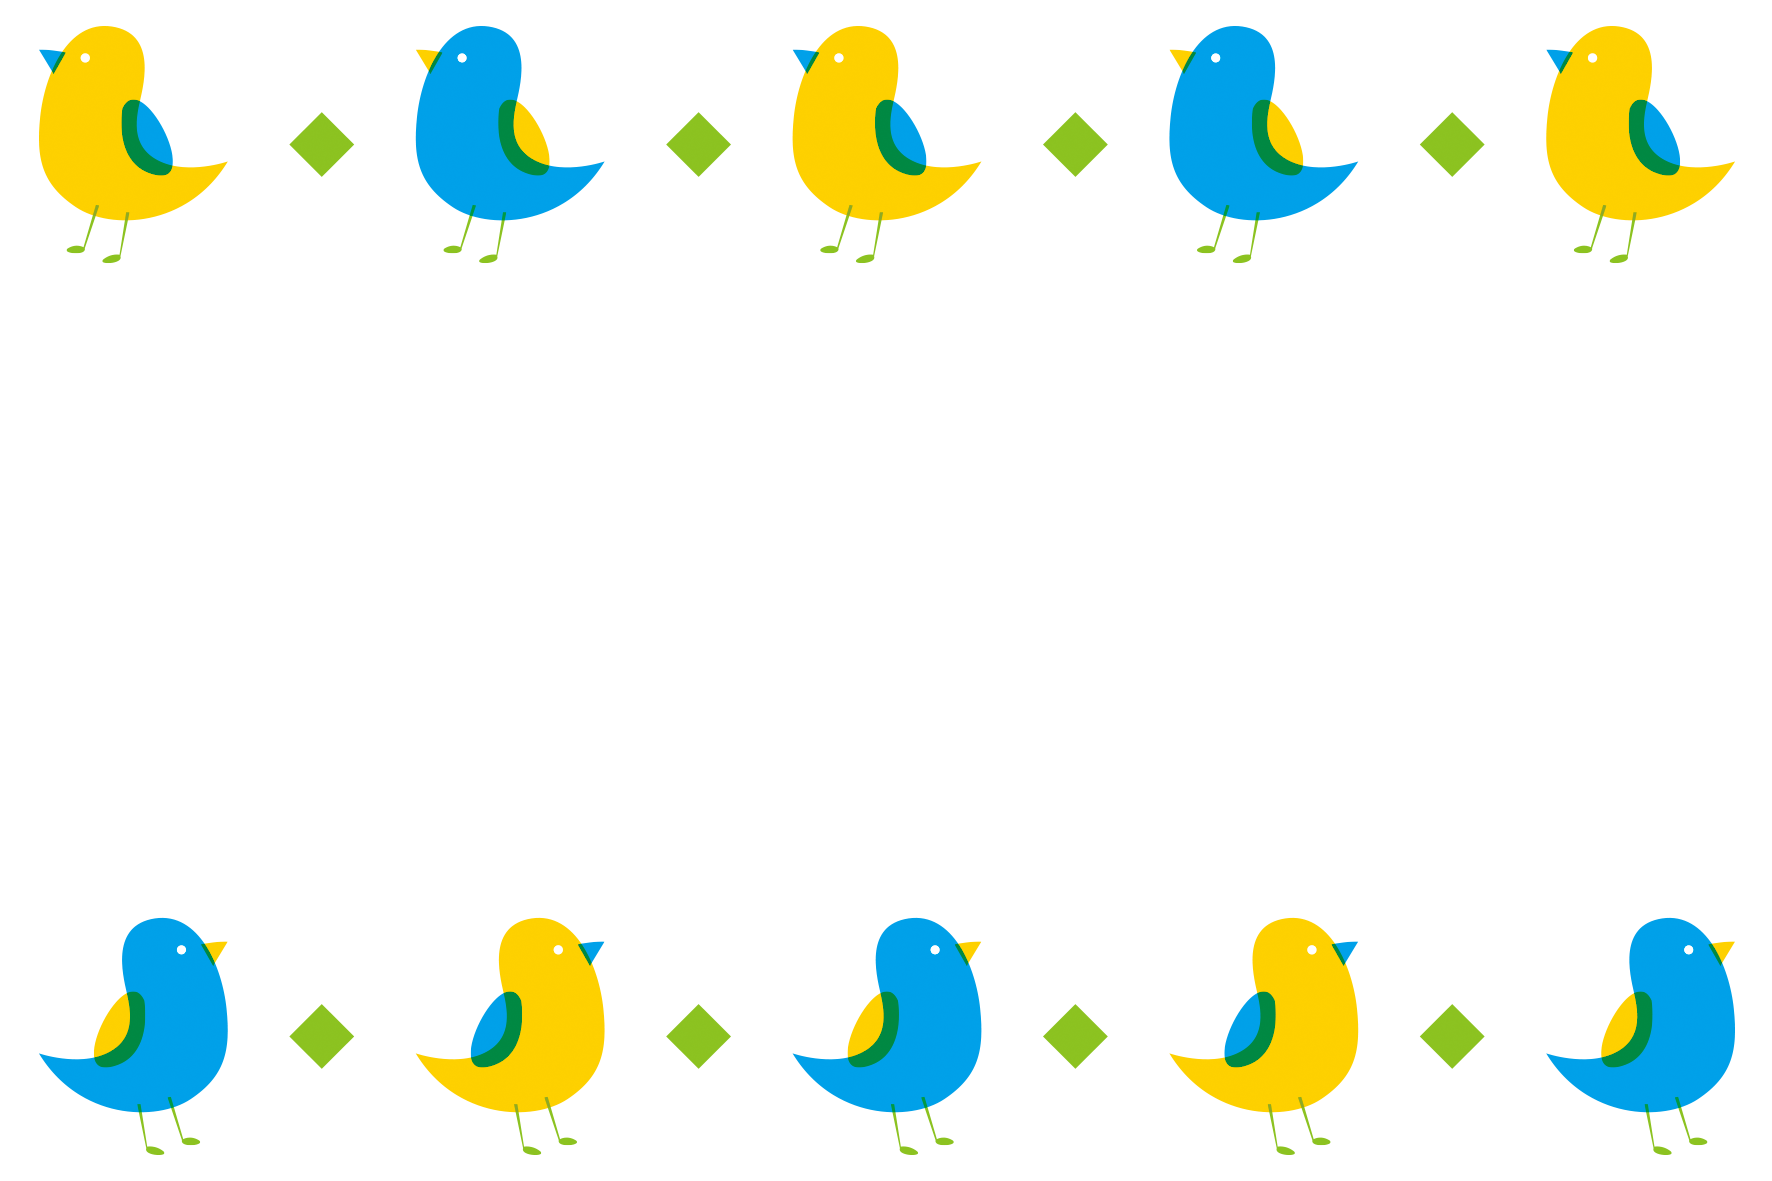 青い小鳥と黄色い小鳥の飾り枠です。シンプルなイラストや配色がオシャレな印象です♪酉年の年賀状にも使えそう！